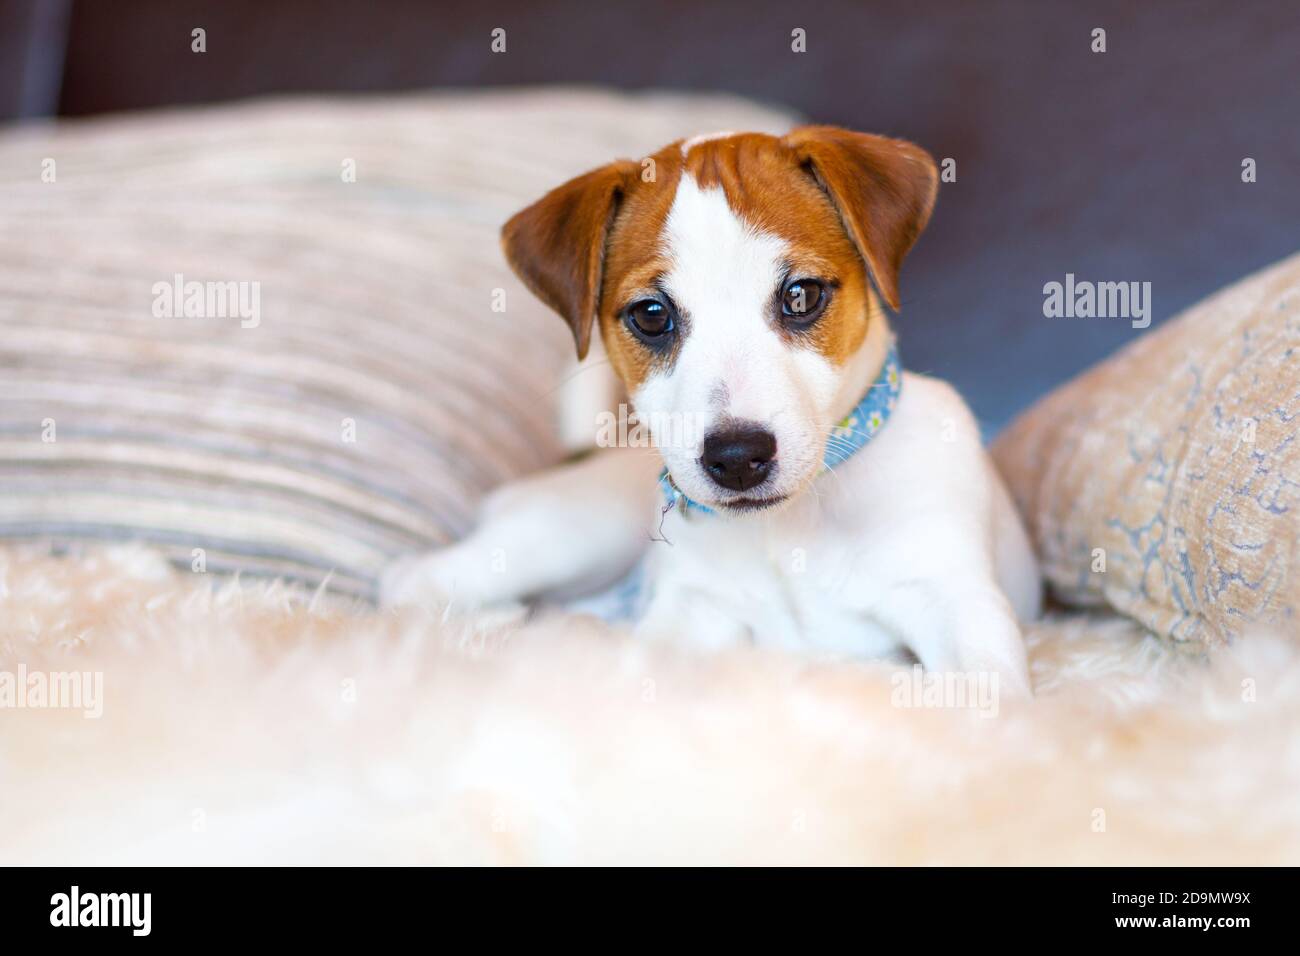 Ein schöner weißer Jack Russell Terrier Welpe in einem blauen Kragen liegt auf der Couch zwischen den Kissen und schaut auf die Kamera. Nahaufnahme eines jungen Hundes Stockfoto